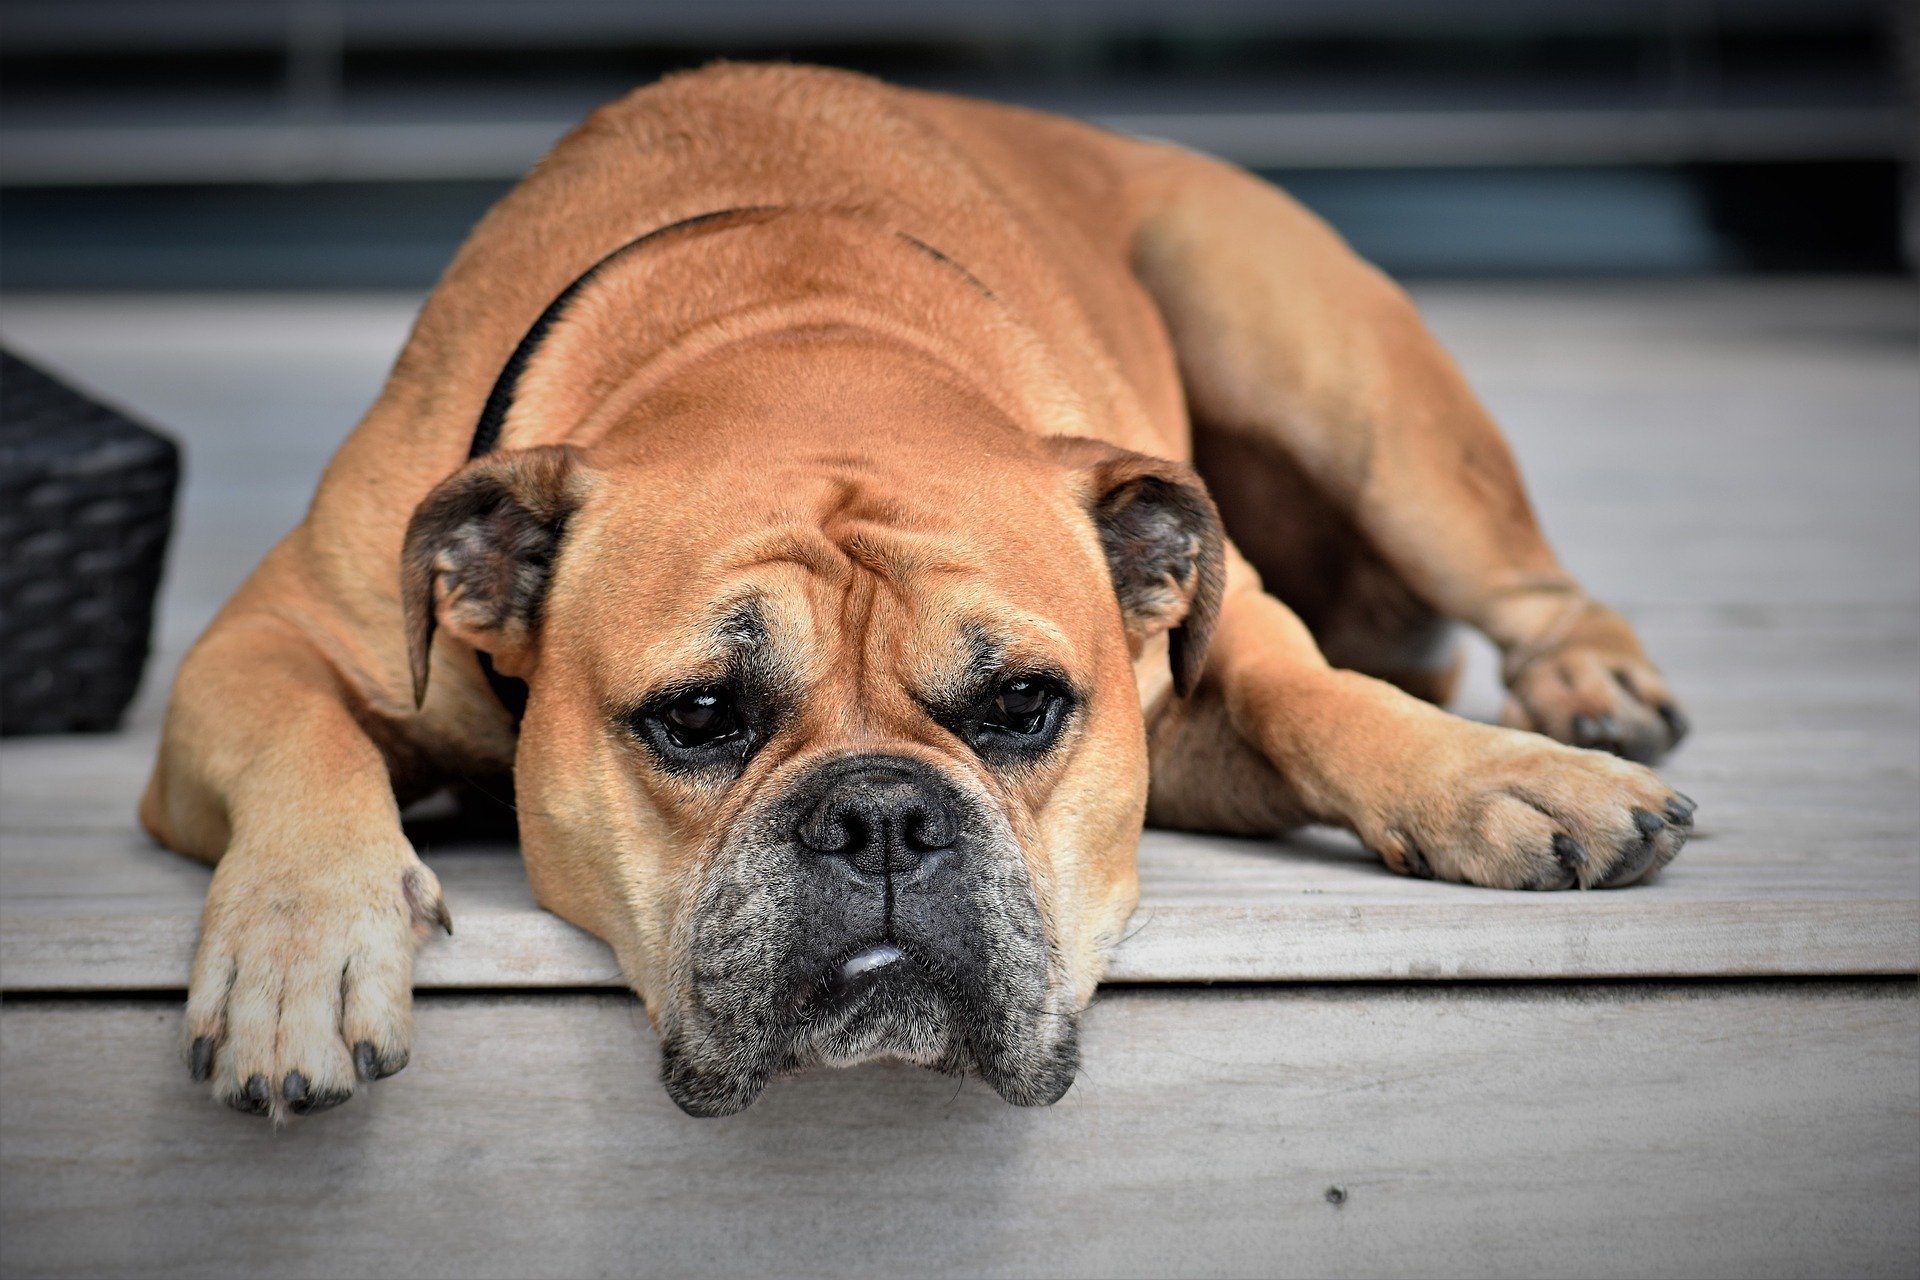 Langeweile, Hund (c) Bild von Pitsch auf Pixabay